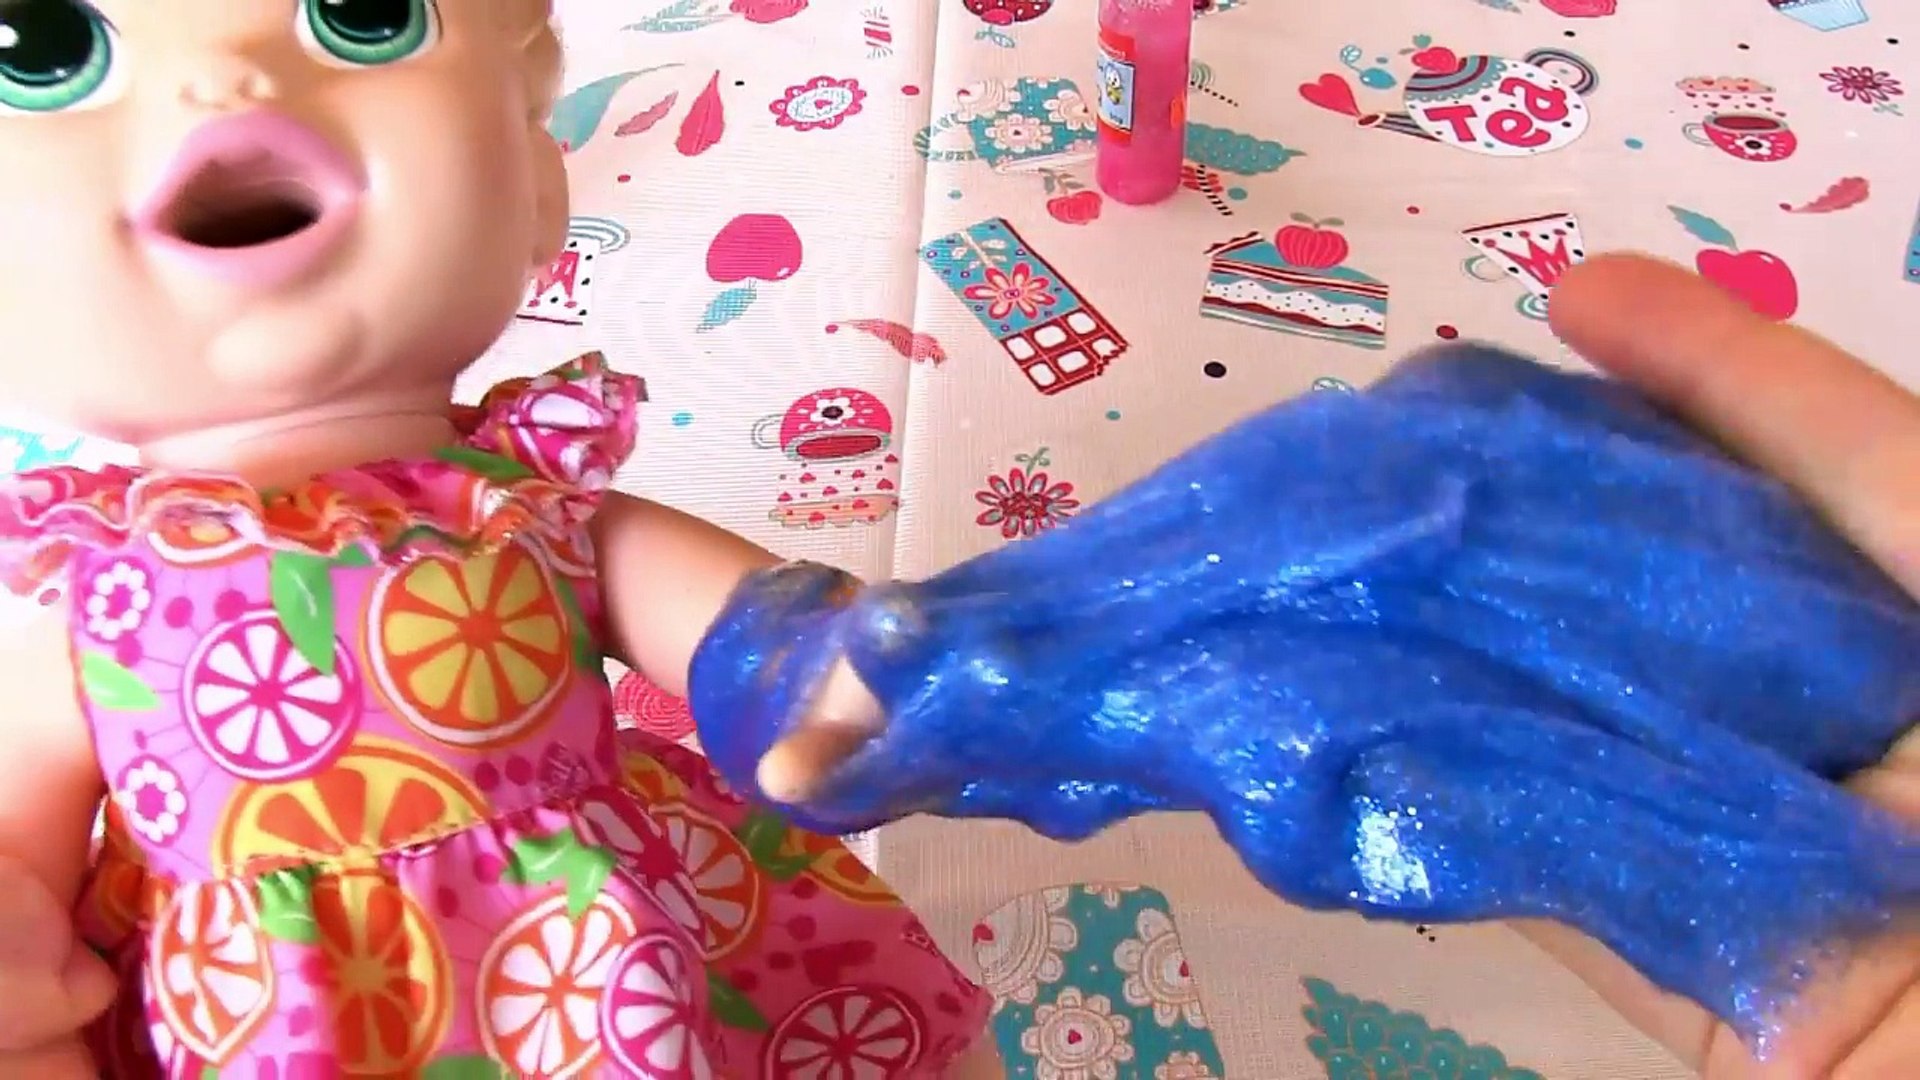 Baby Alive Oyuncak Bebekler İçin Slime Elbise Nasıl Yapılır? - Dailymotion  Video